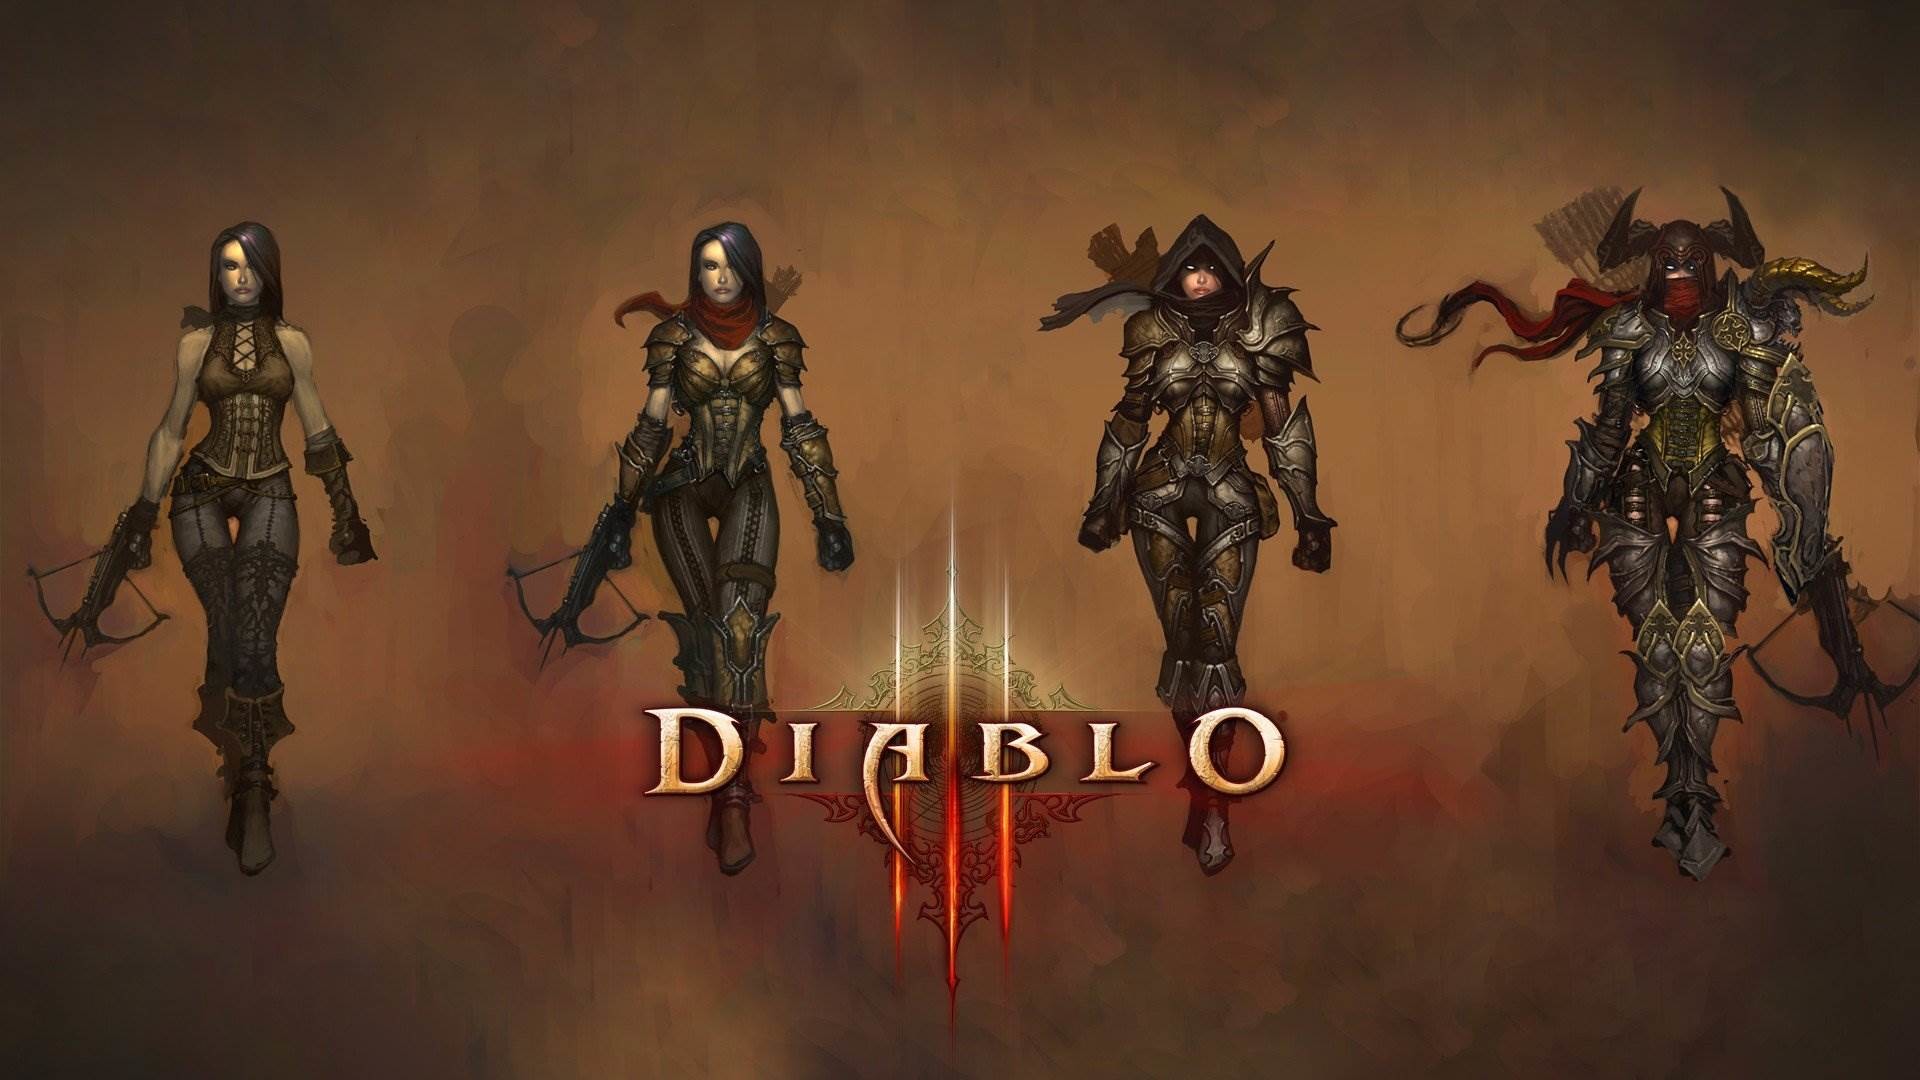 1920x1080 Diablo Demon Hunter Wallpaper 1920Ã1080